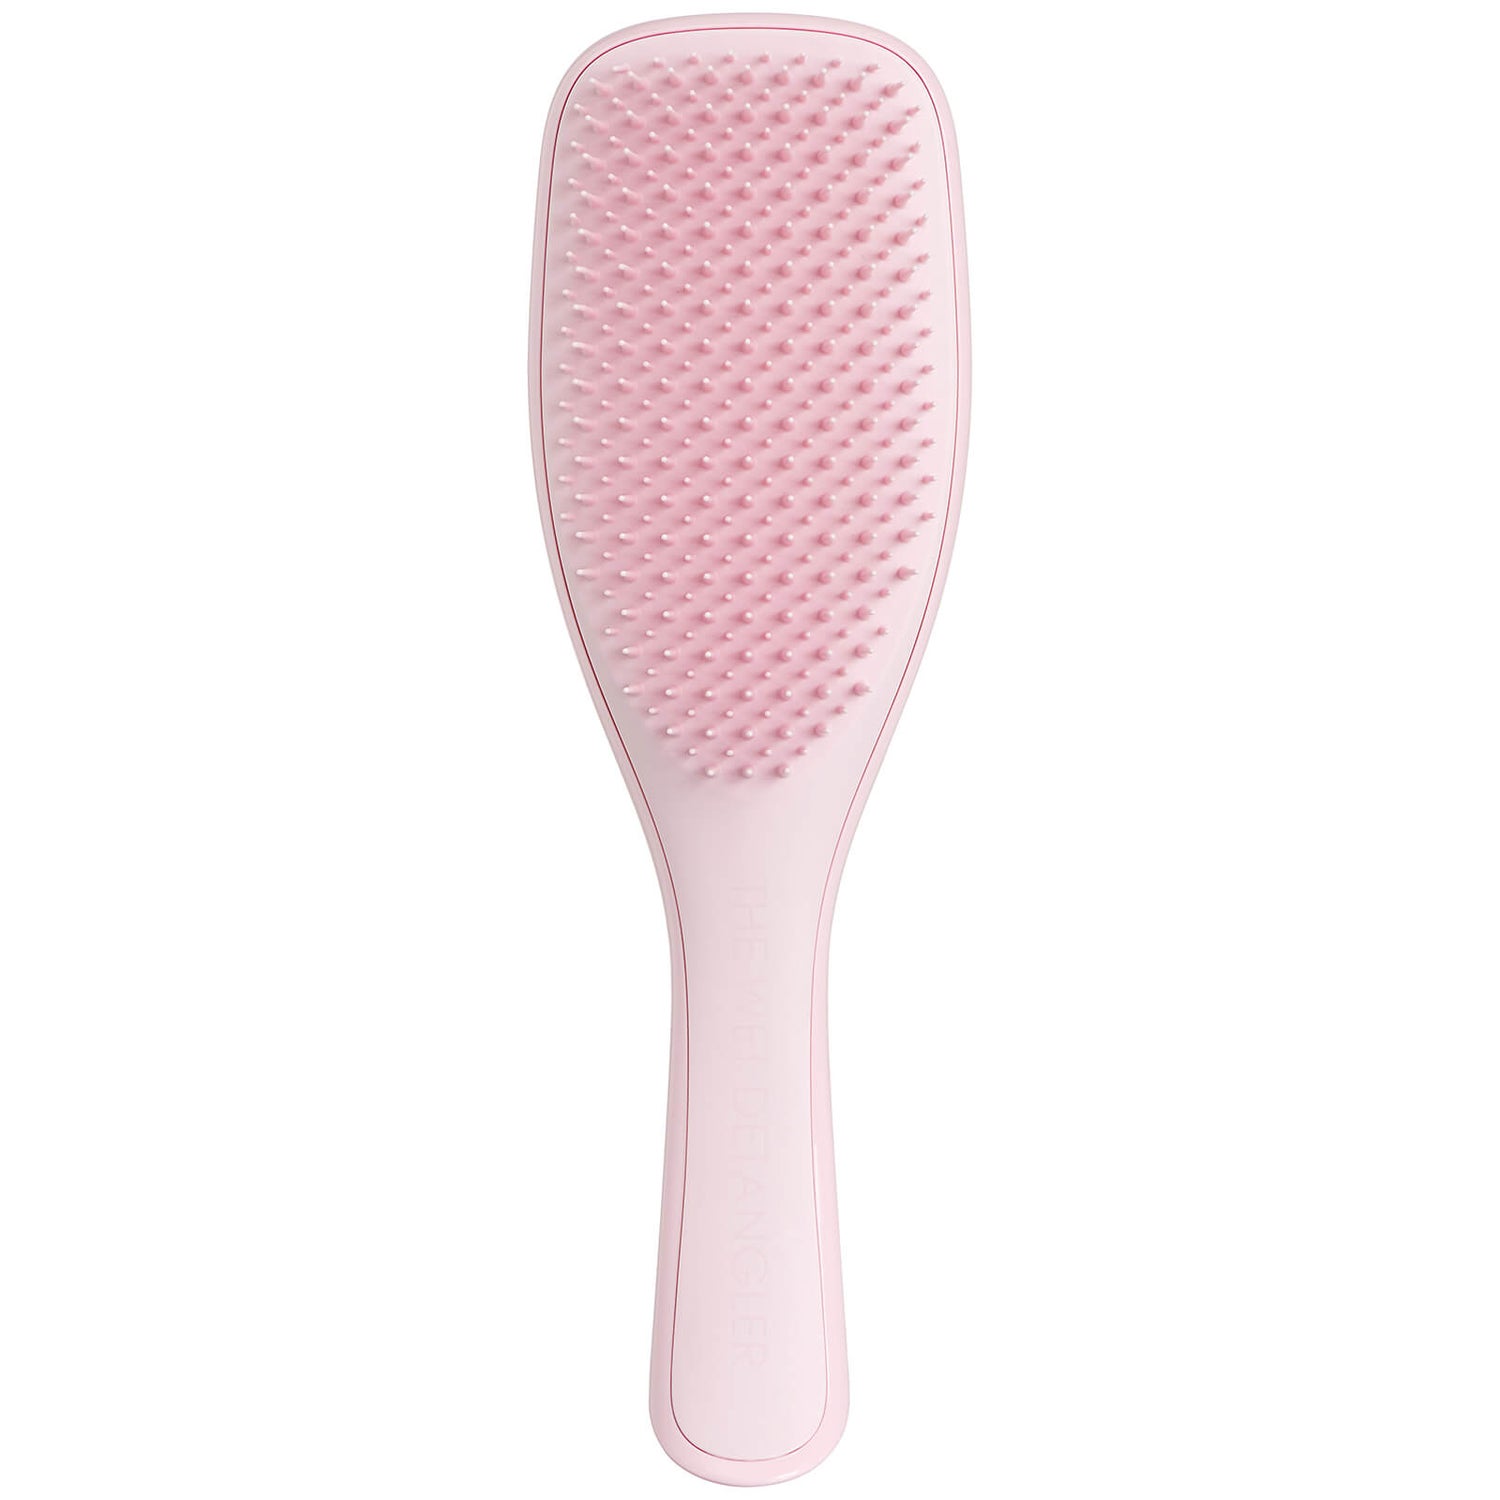 Tangle Teezer The Wet Detangler Hairbrush -hiusharja, Millennial Pink